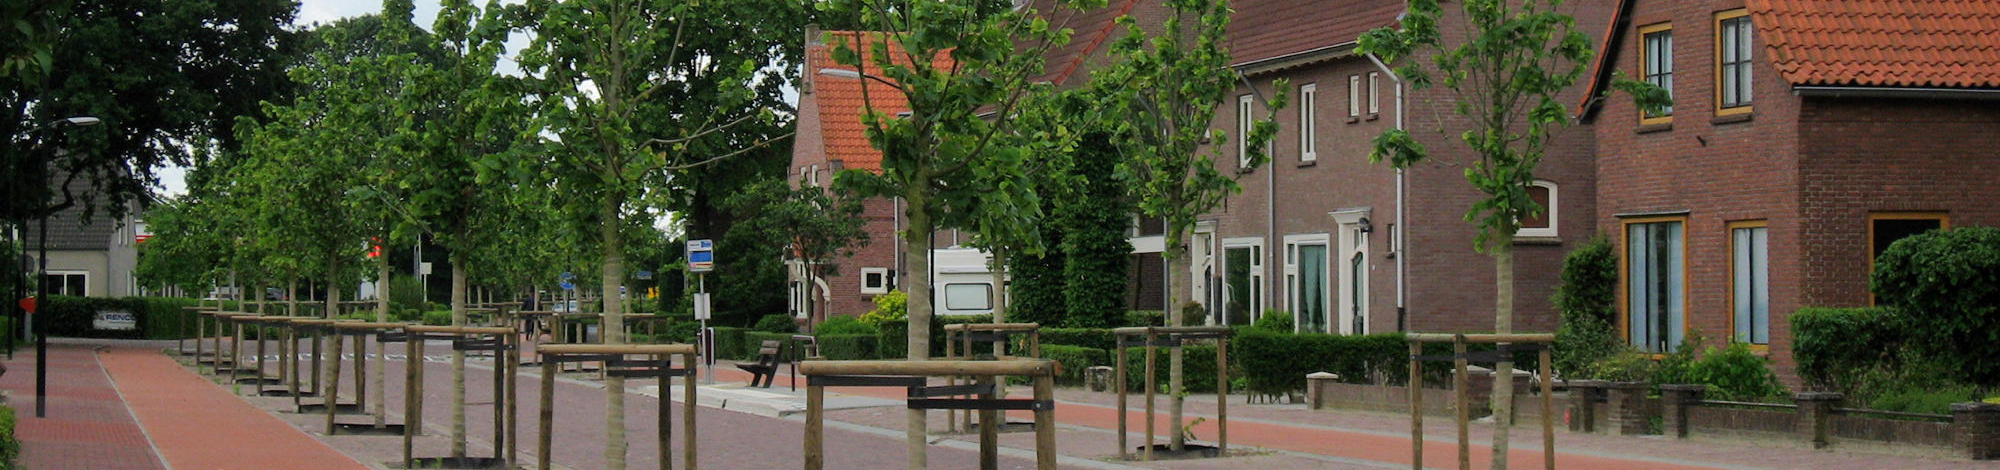 Улица Gelderstraat Хильваренбек